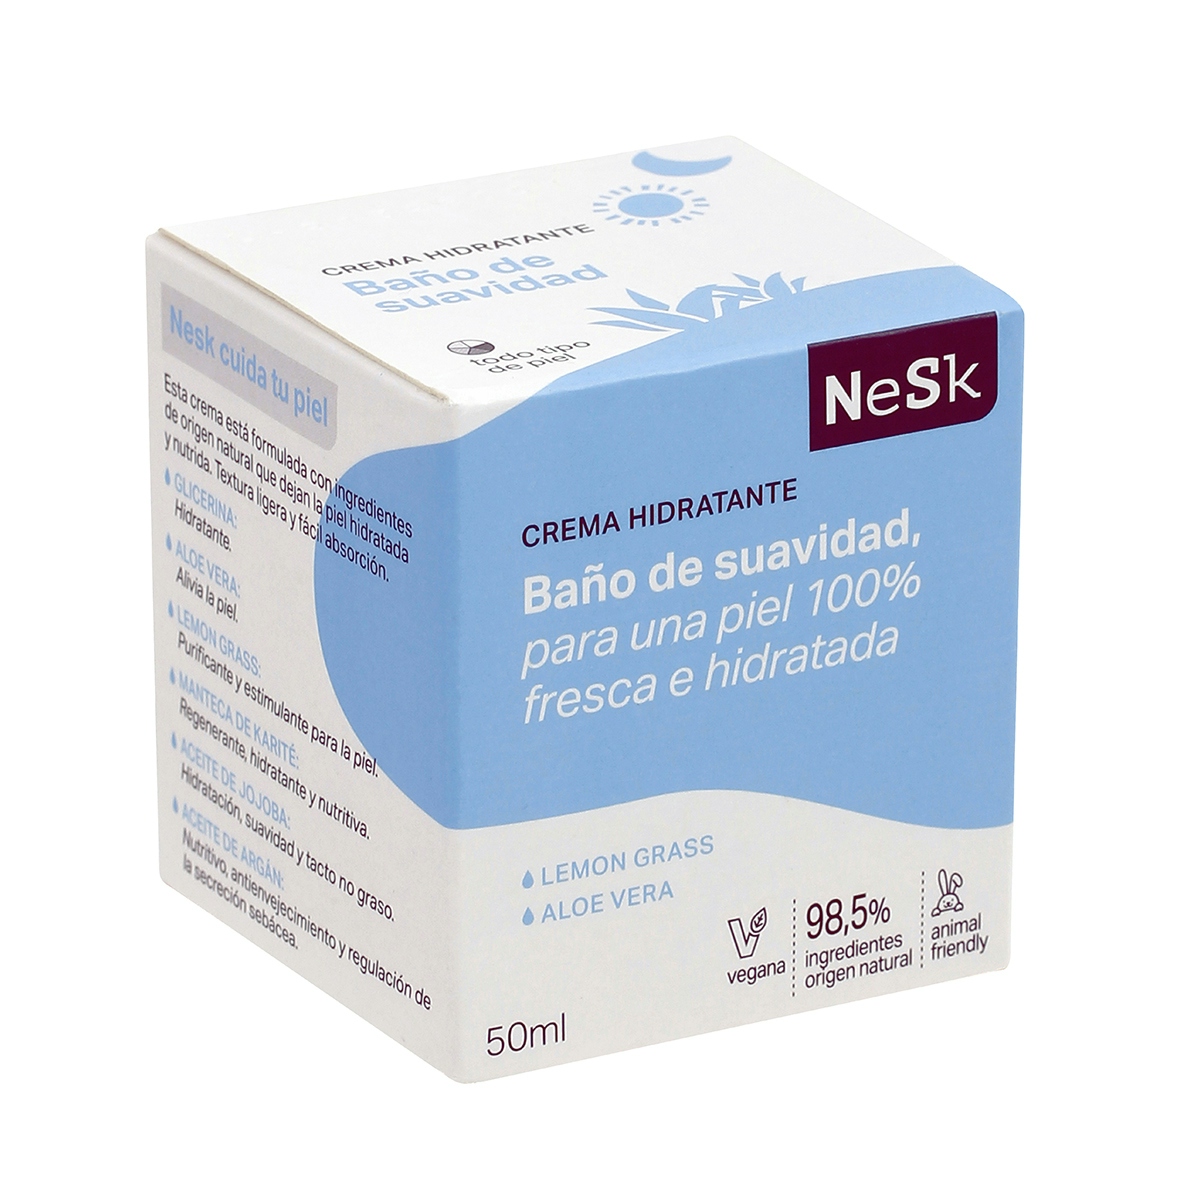 Crema Hidratante "Baño de Suavidad" de NeSk 50 ml